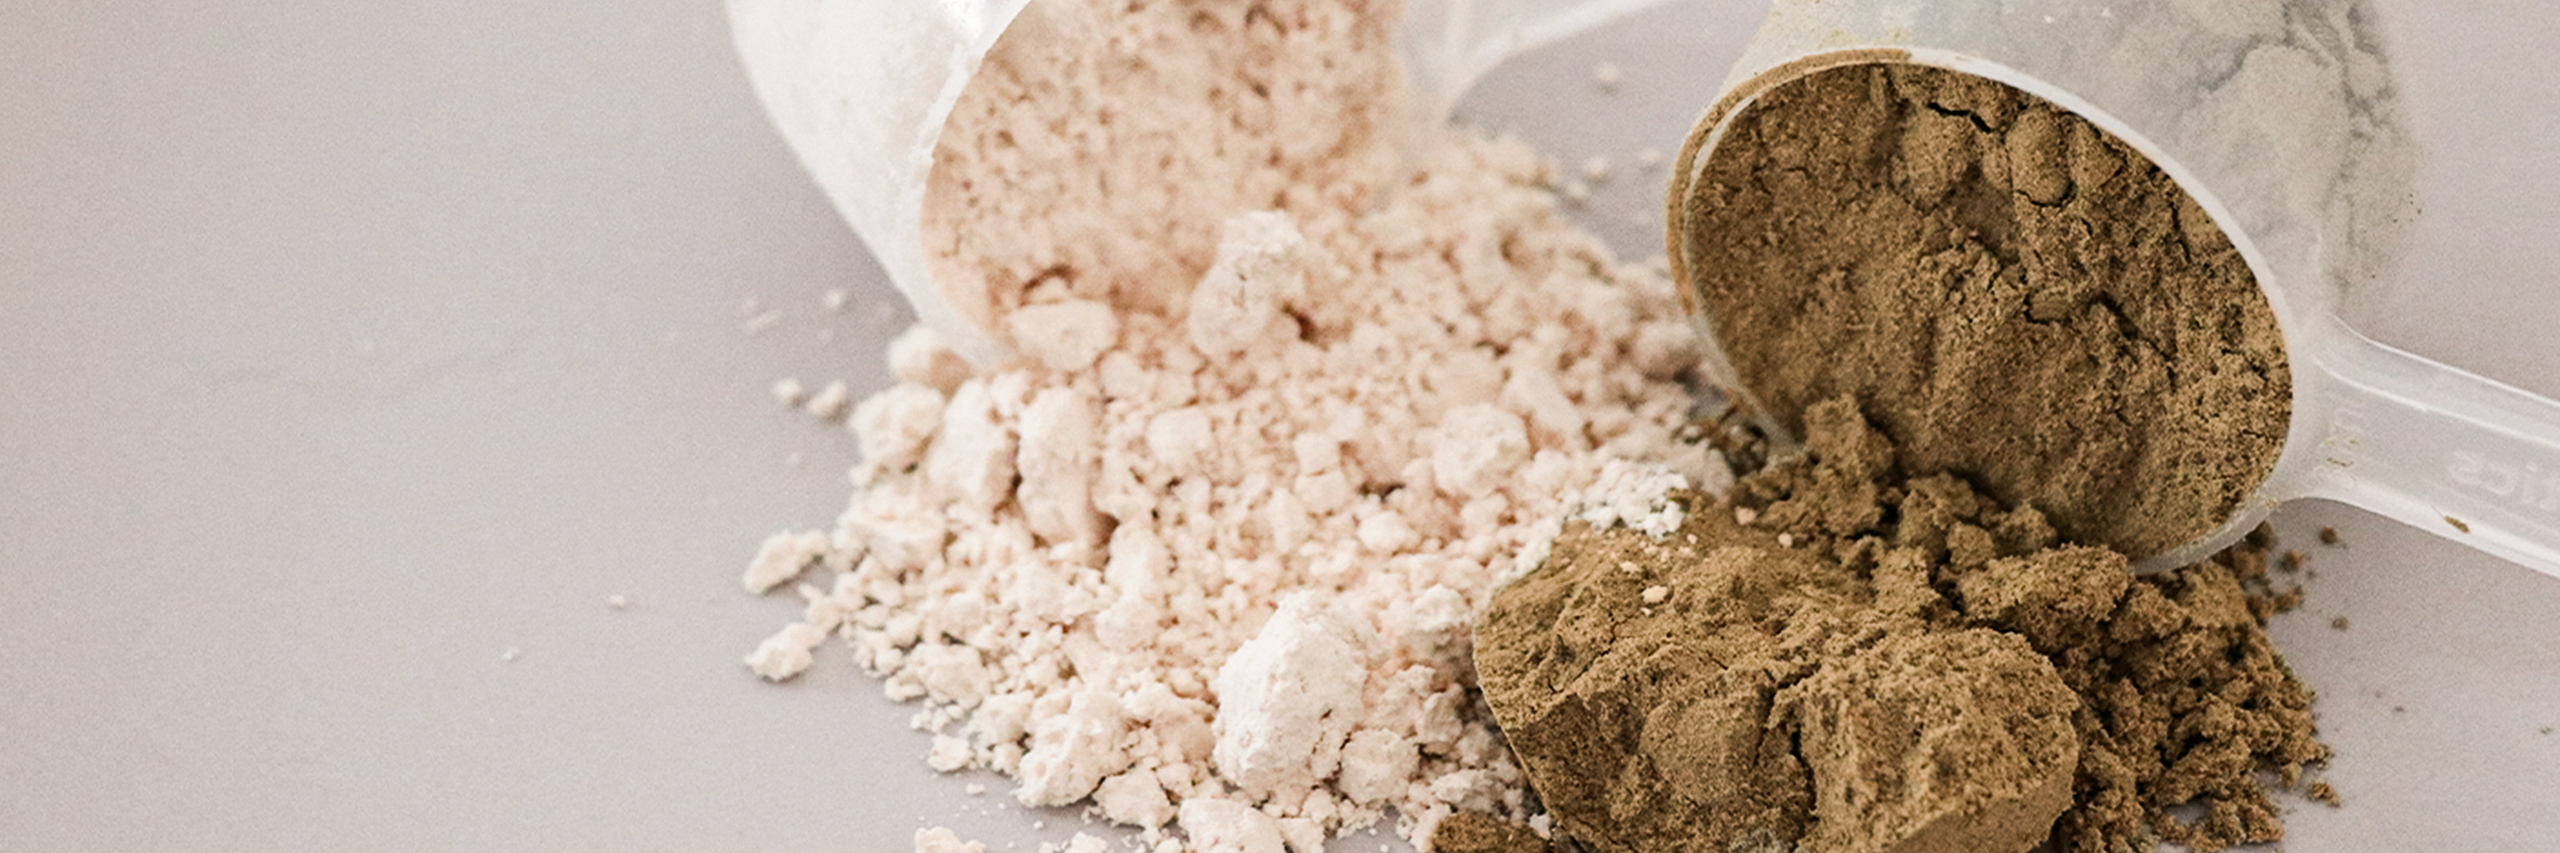 Protein powder supplement scoops